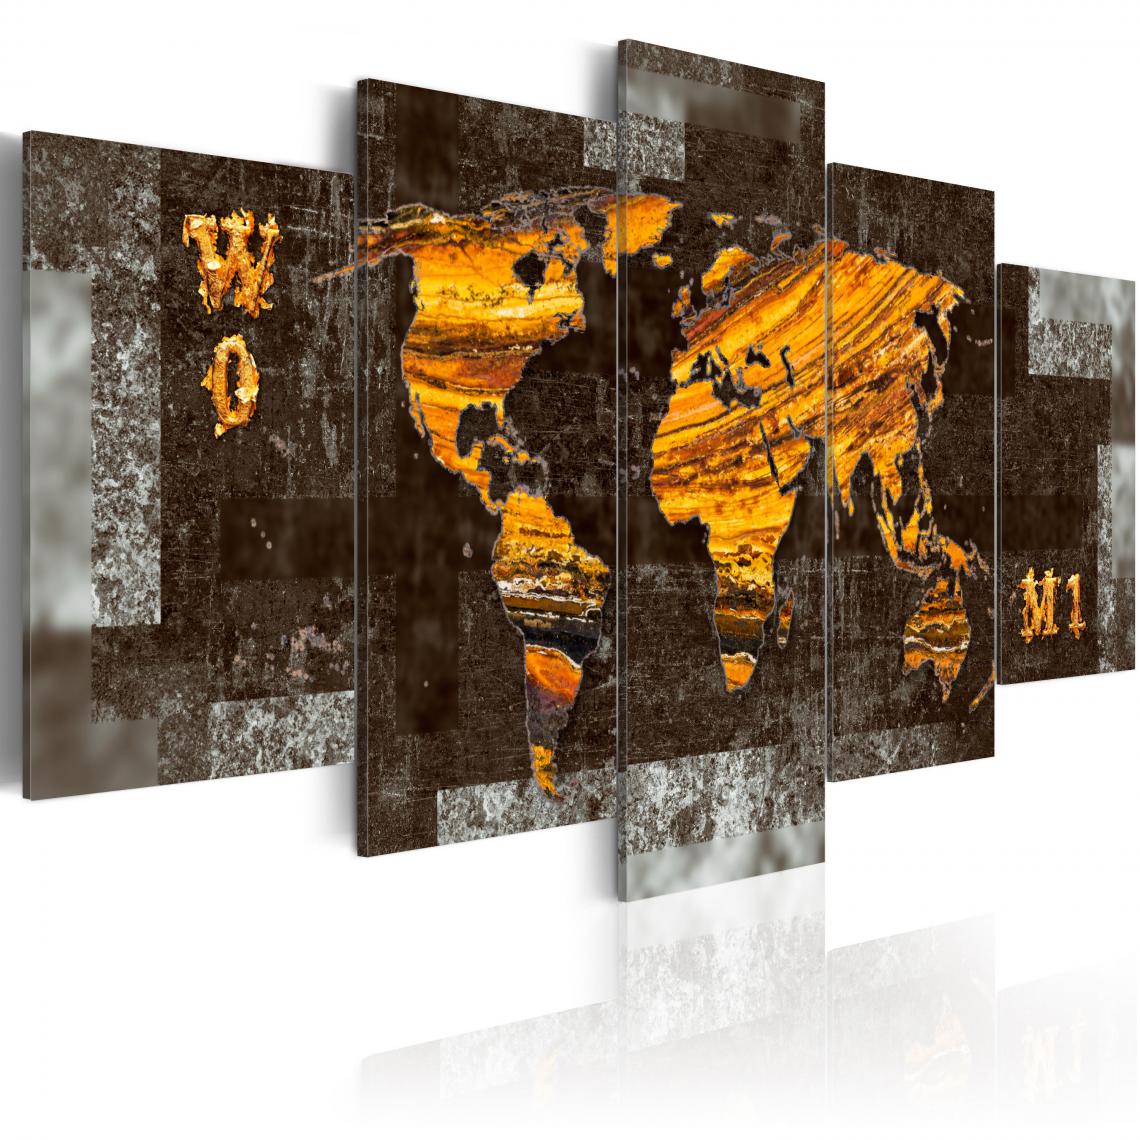 Decoshop26 - Tableau sur toile en 5 panneaux décoration murale image imprimée cadre en bois à suspendre Trésors cachés (Carte du monde) 100x50 cm 11_0004212 - Tableaux, peintures